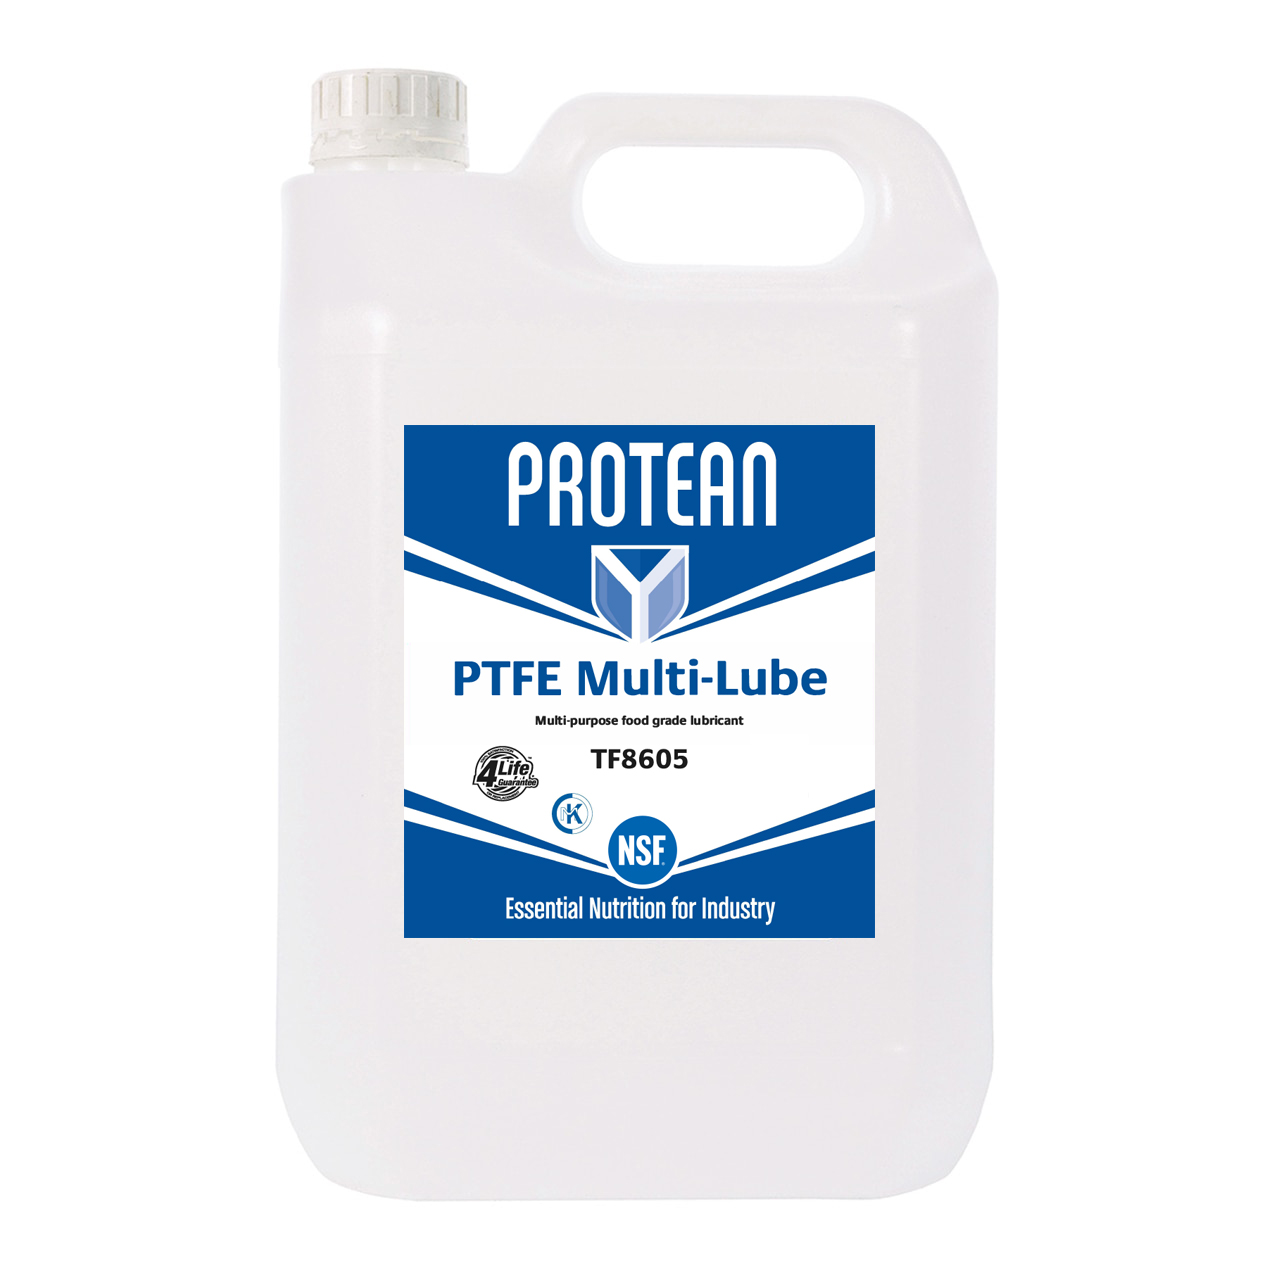 PROTEAN PTFE Multi-Lube 5L - TF8650 - Box of 4